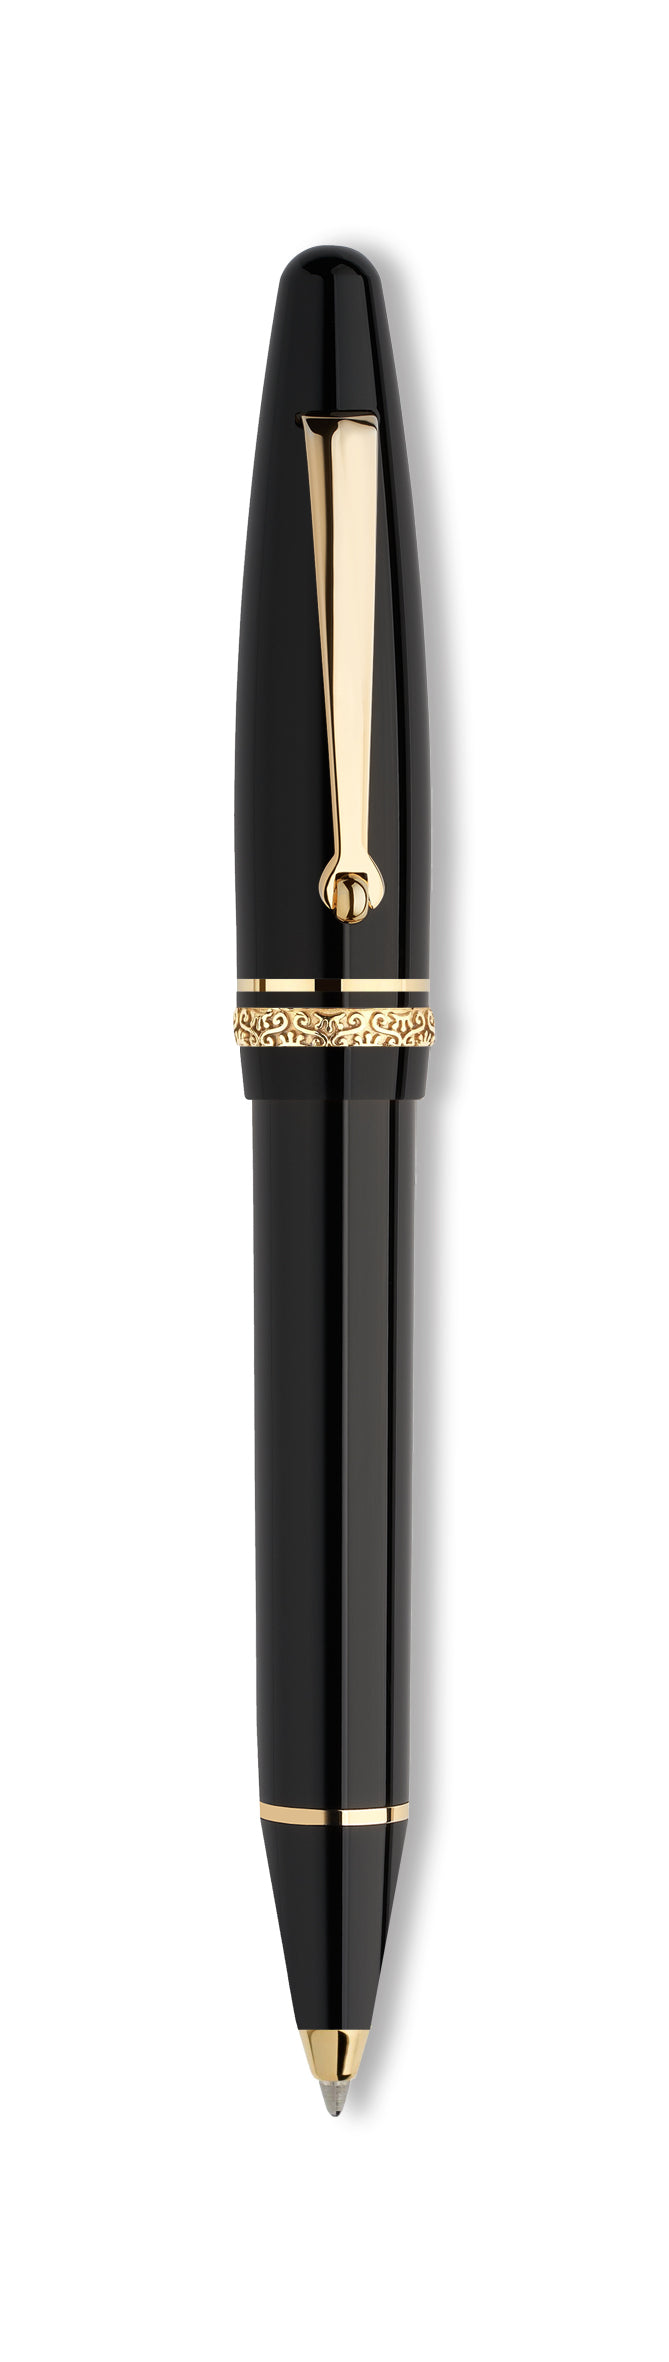 Maiora Ultra Ogiva Golden Age Nera GT Ballpoint Pen